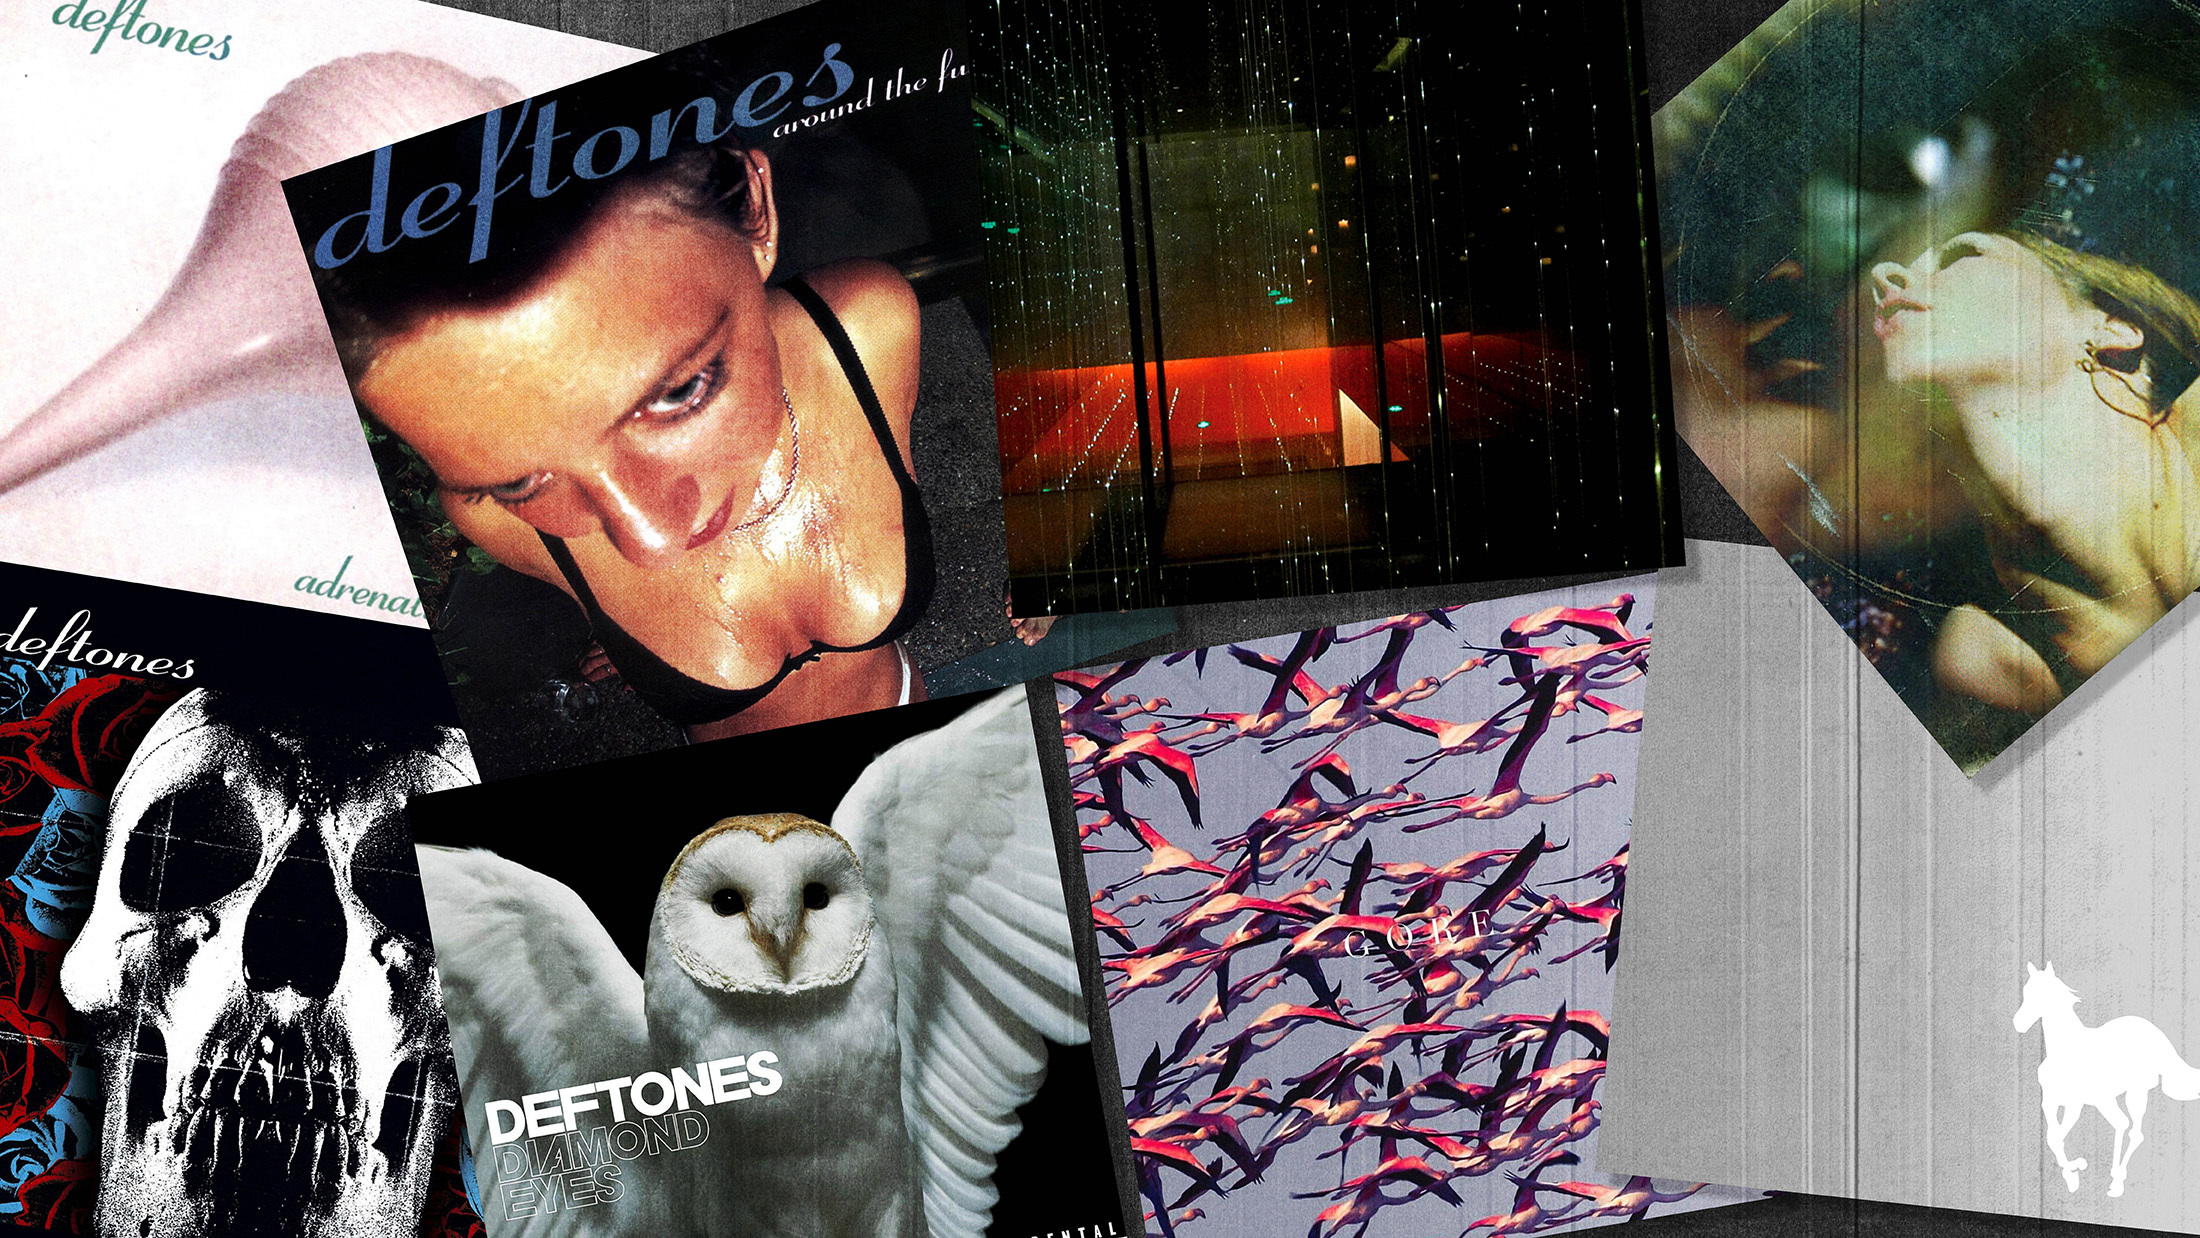 deftones albums in order